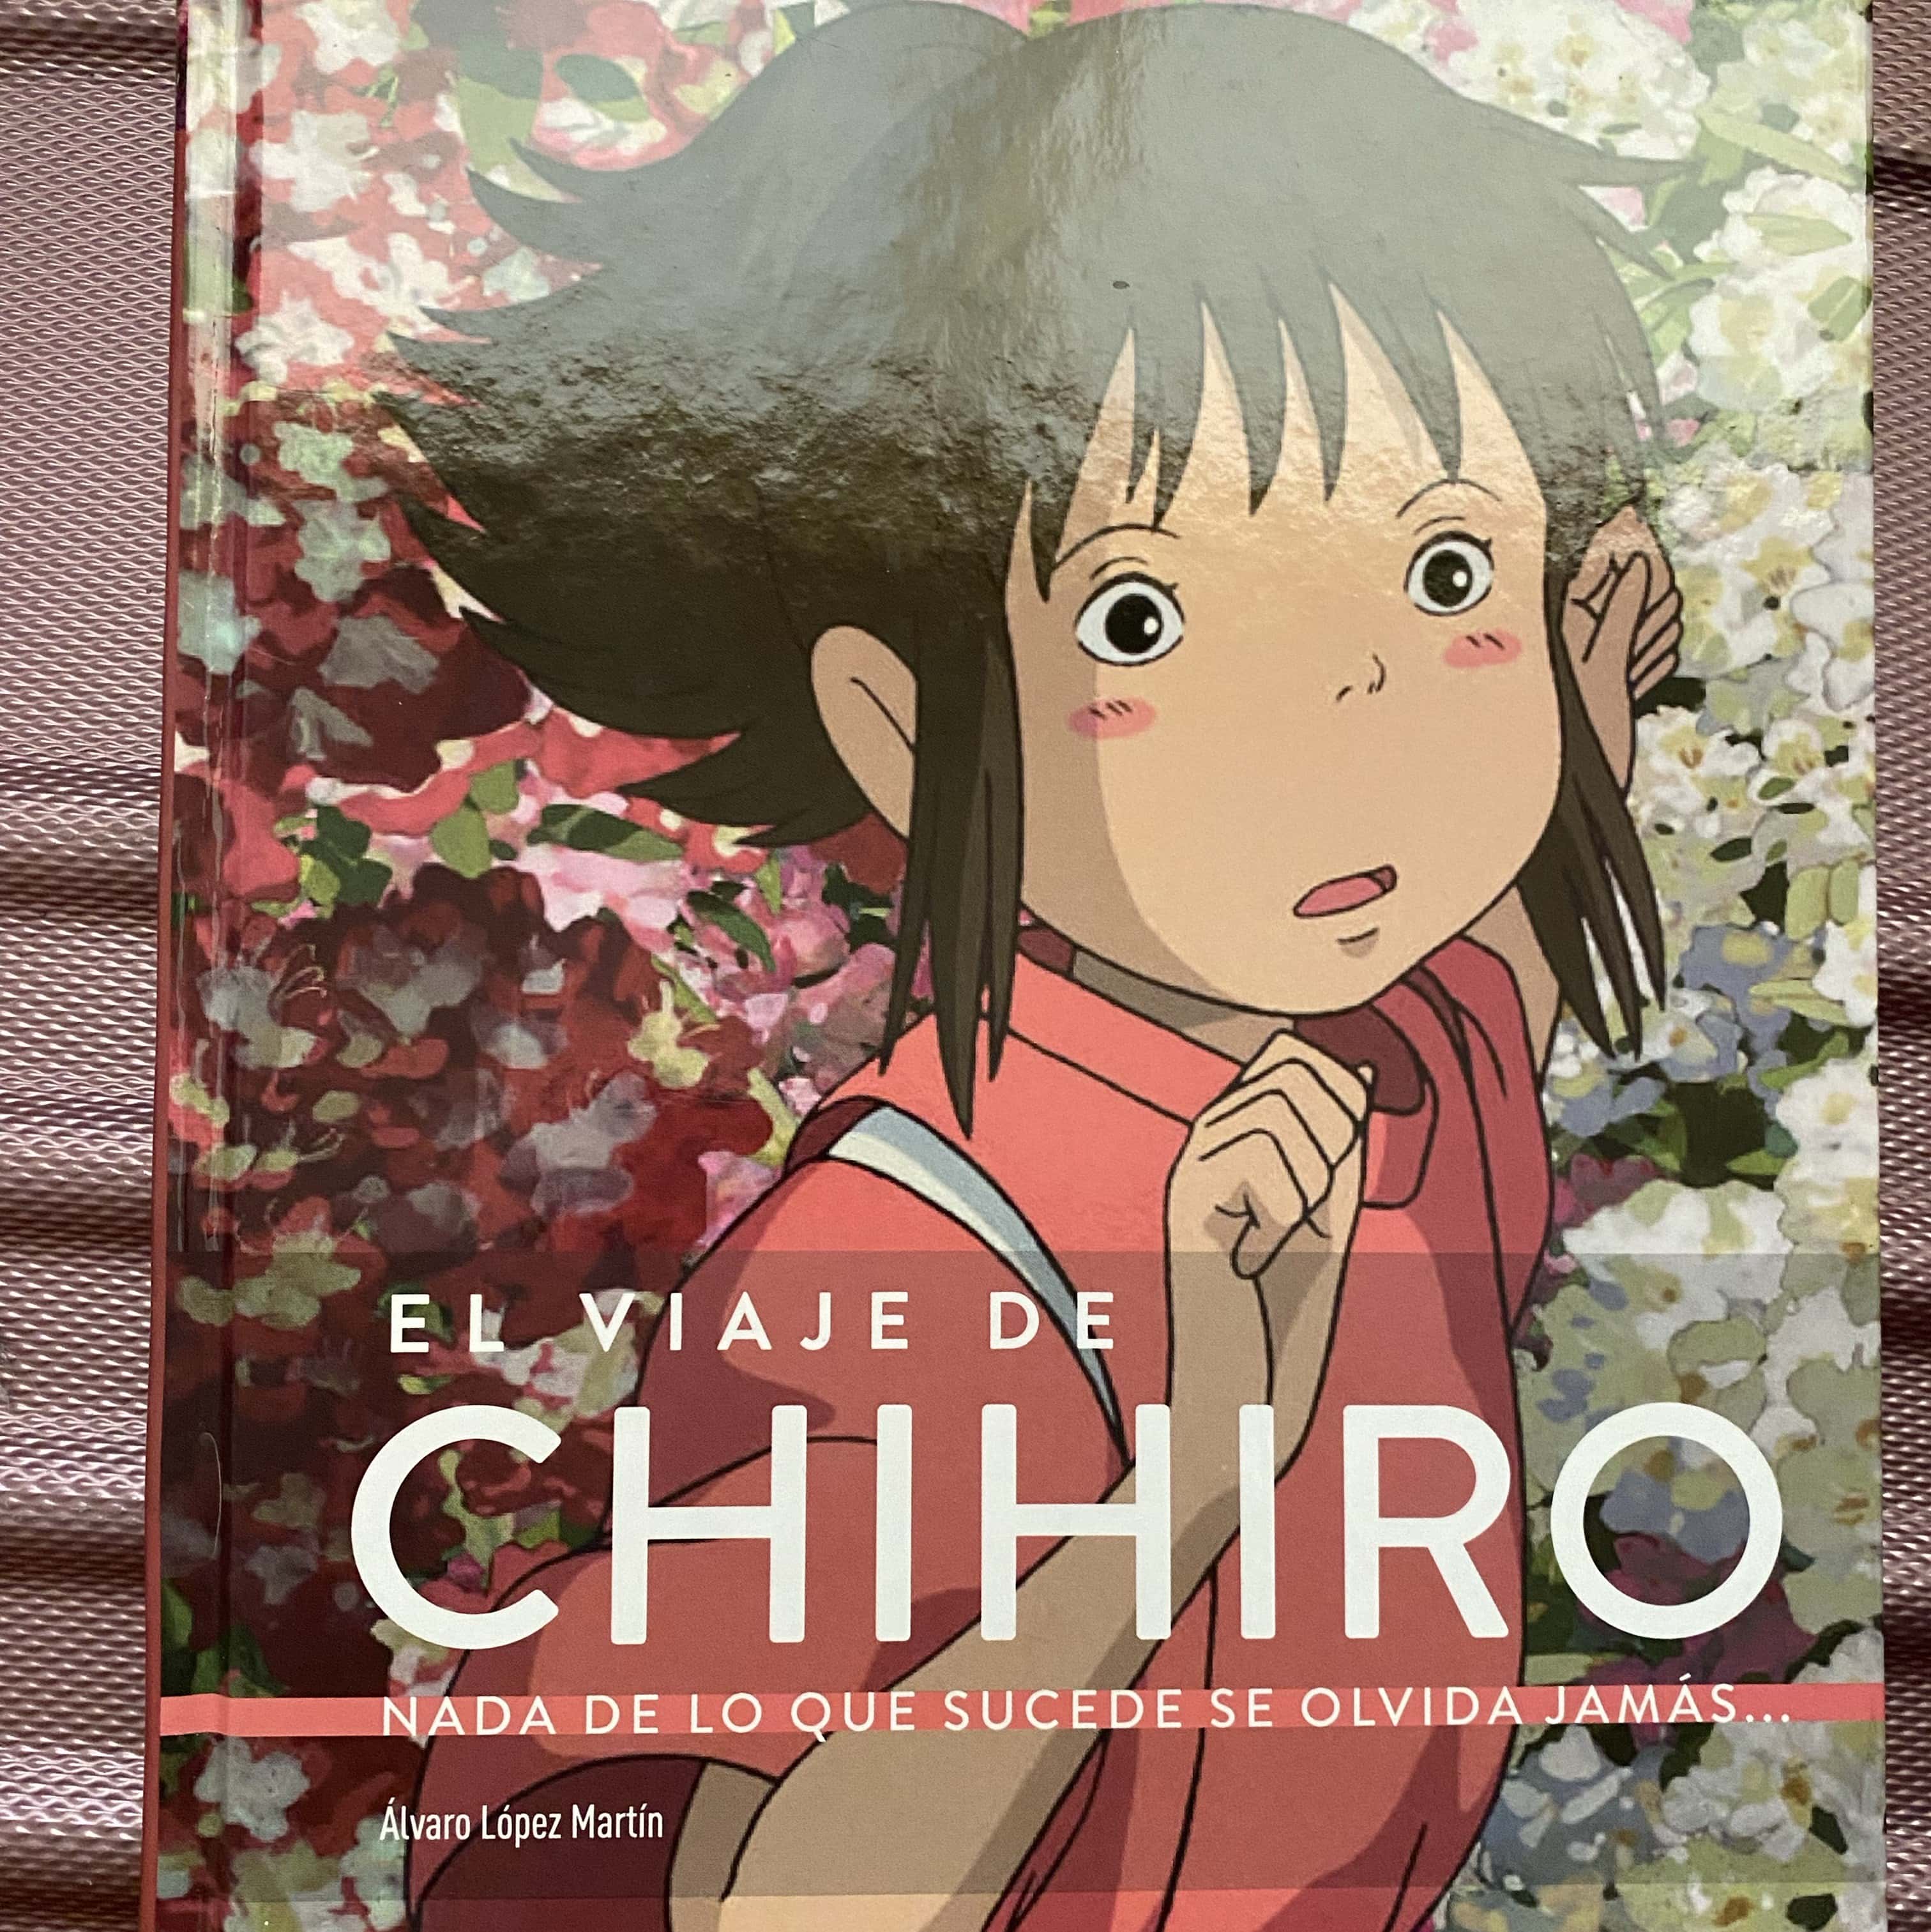 Libro de segunda mano: El viaje de Chihiro. Nada de lo que sucede se olvida jamás...